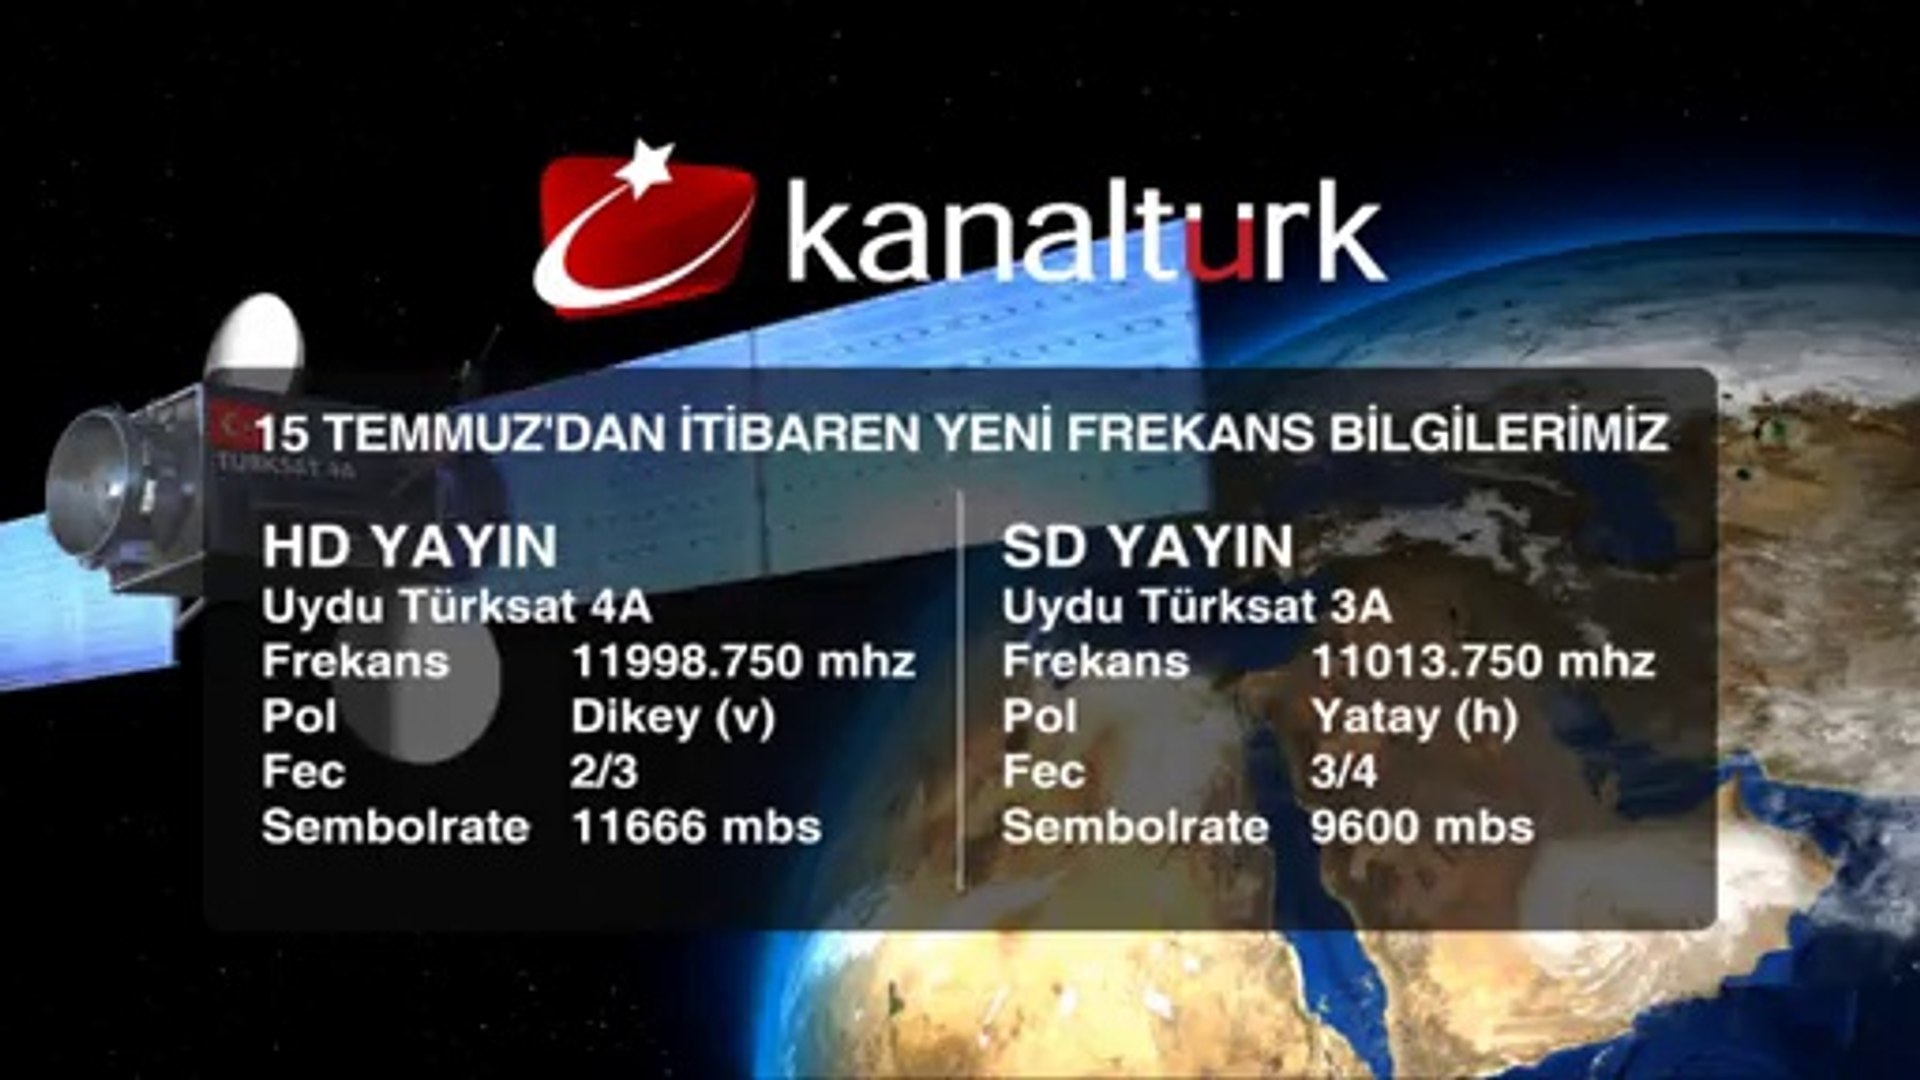 Kanaltürk TV'nin 15 Temmuz'dan itibaren yeni frekans bilgileri! -  Dailymotion Video